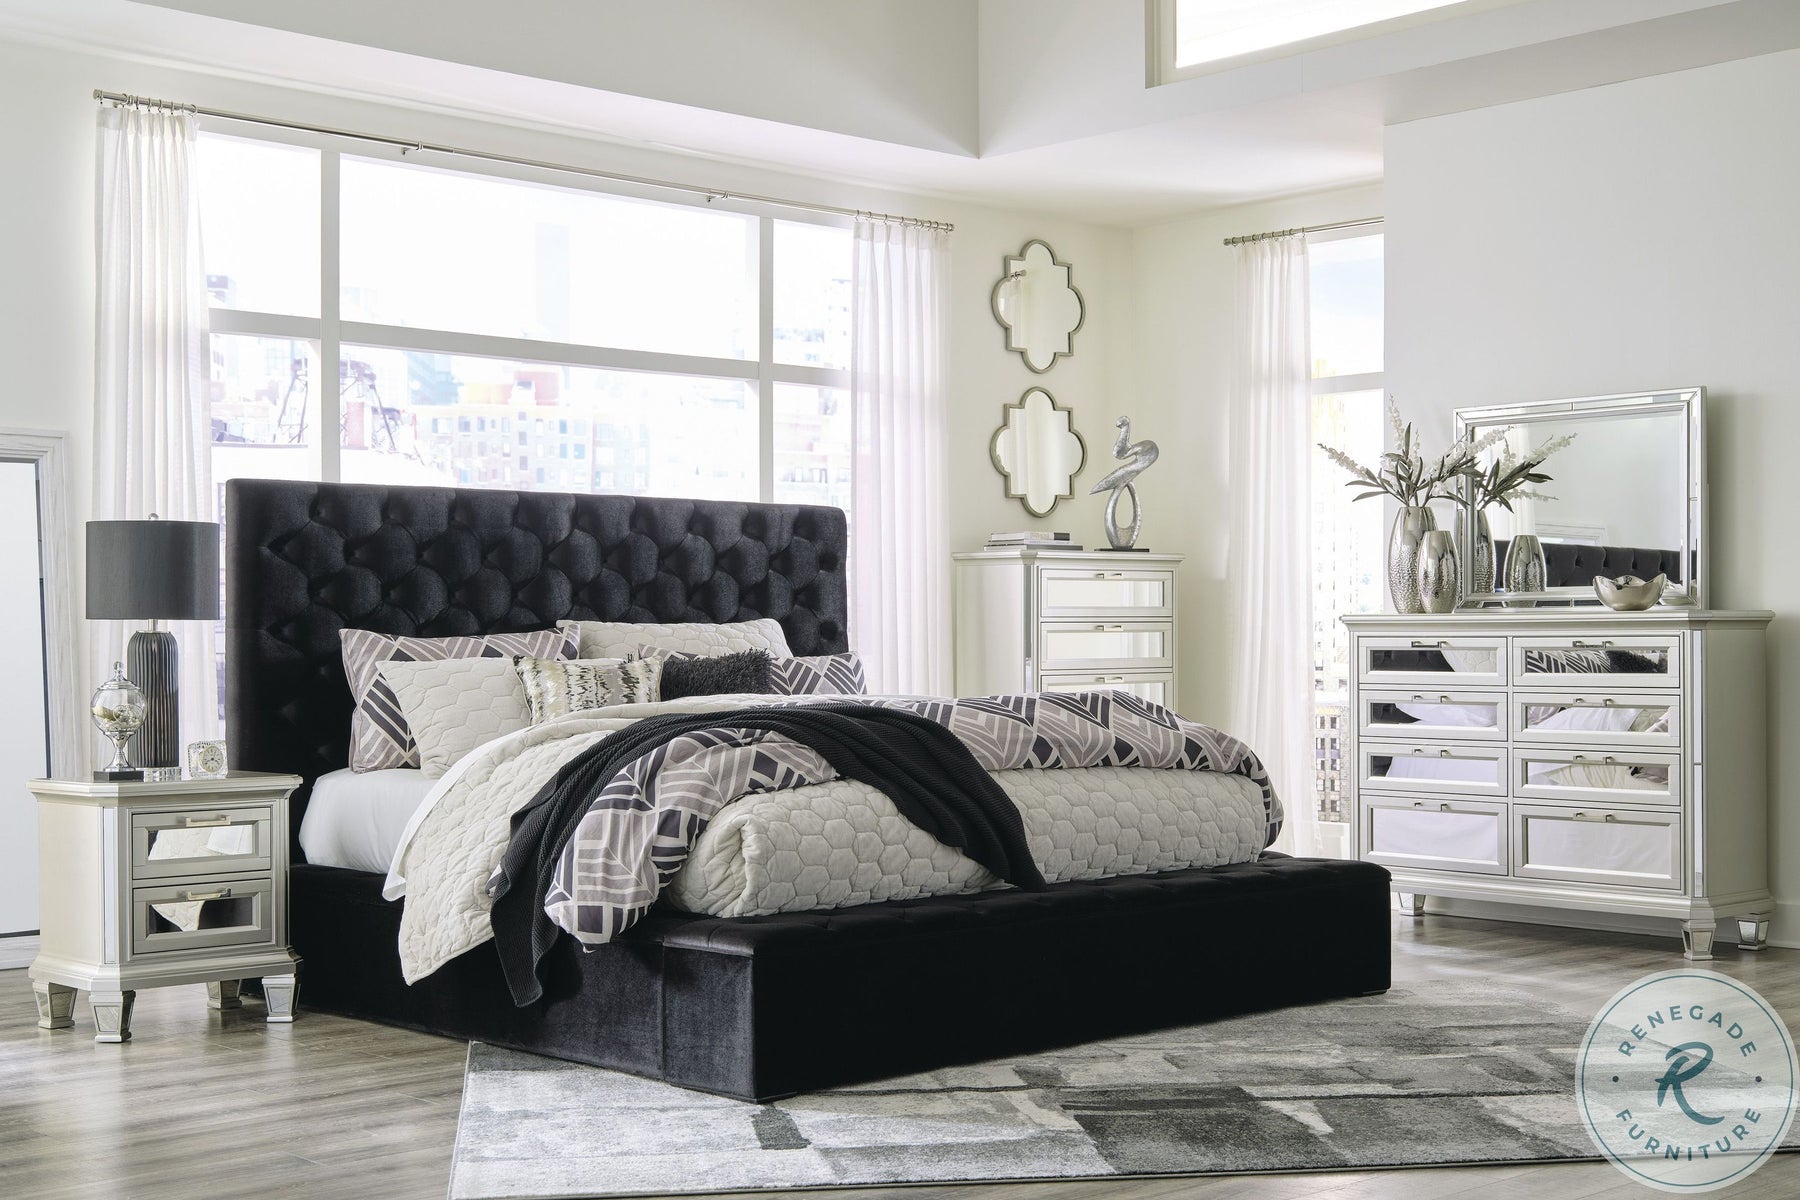 We offer delivery services for beds and bedroom sets in Las Vegas, Bedroom Furniture Sets for Sale | Las Vegas Bedroom Sets